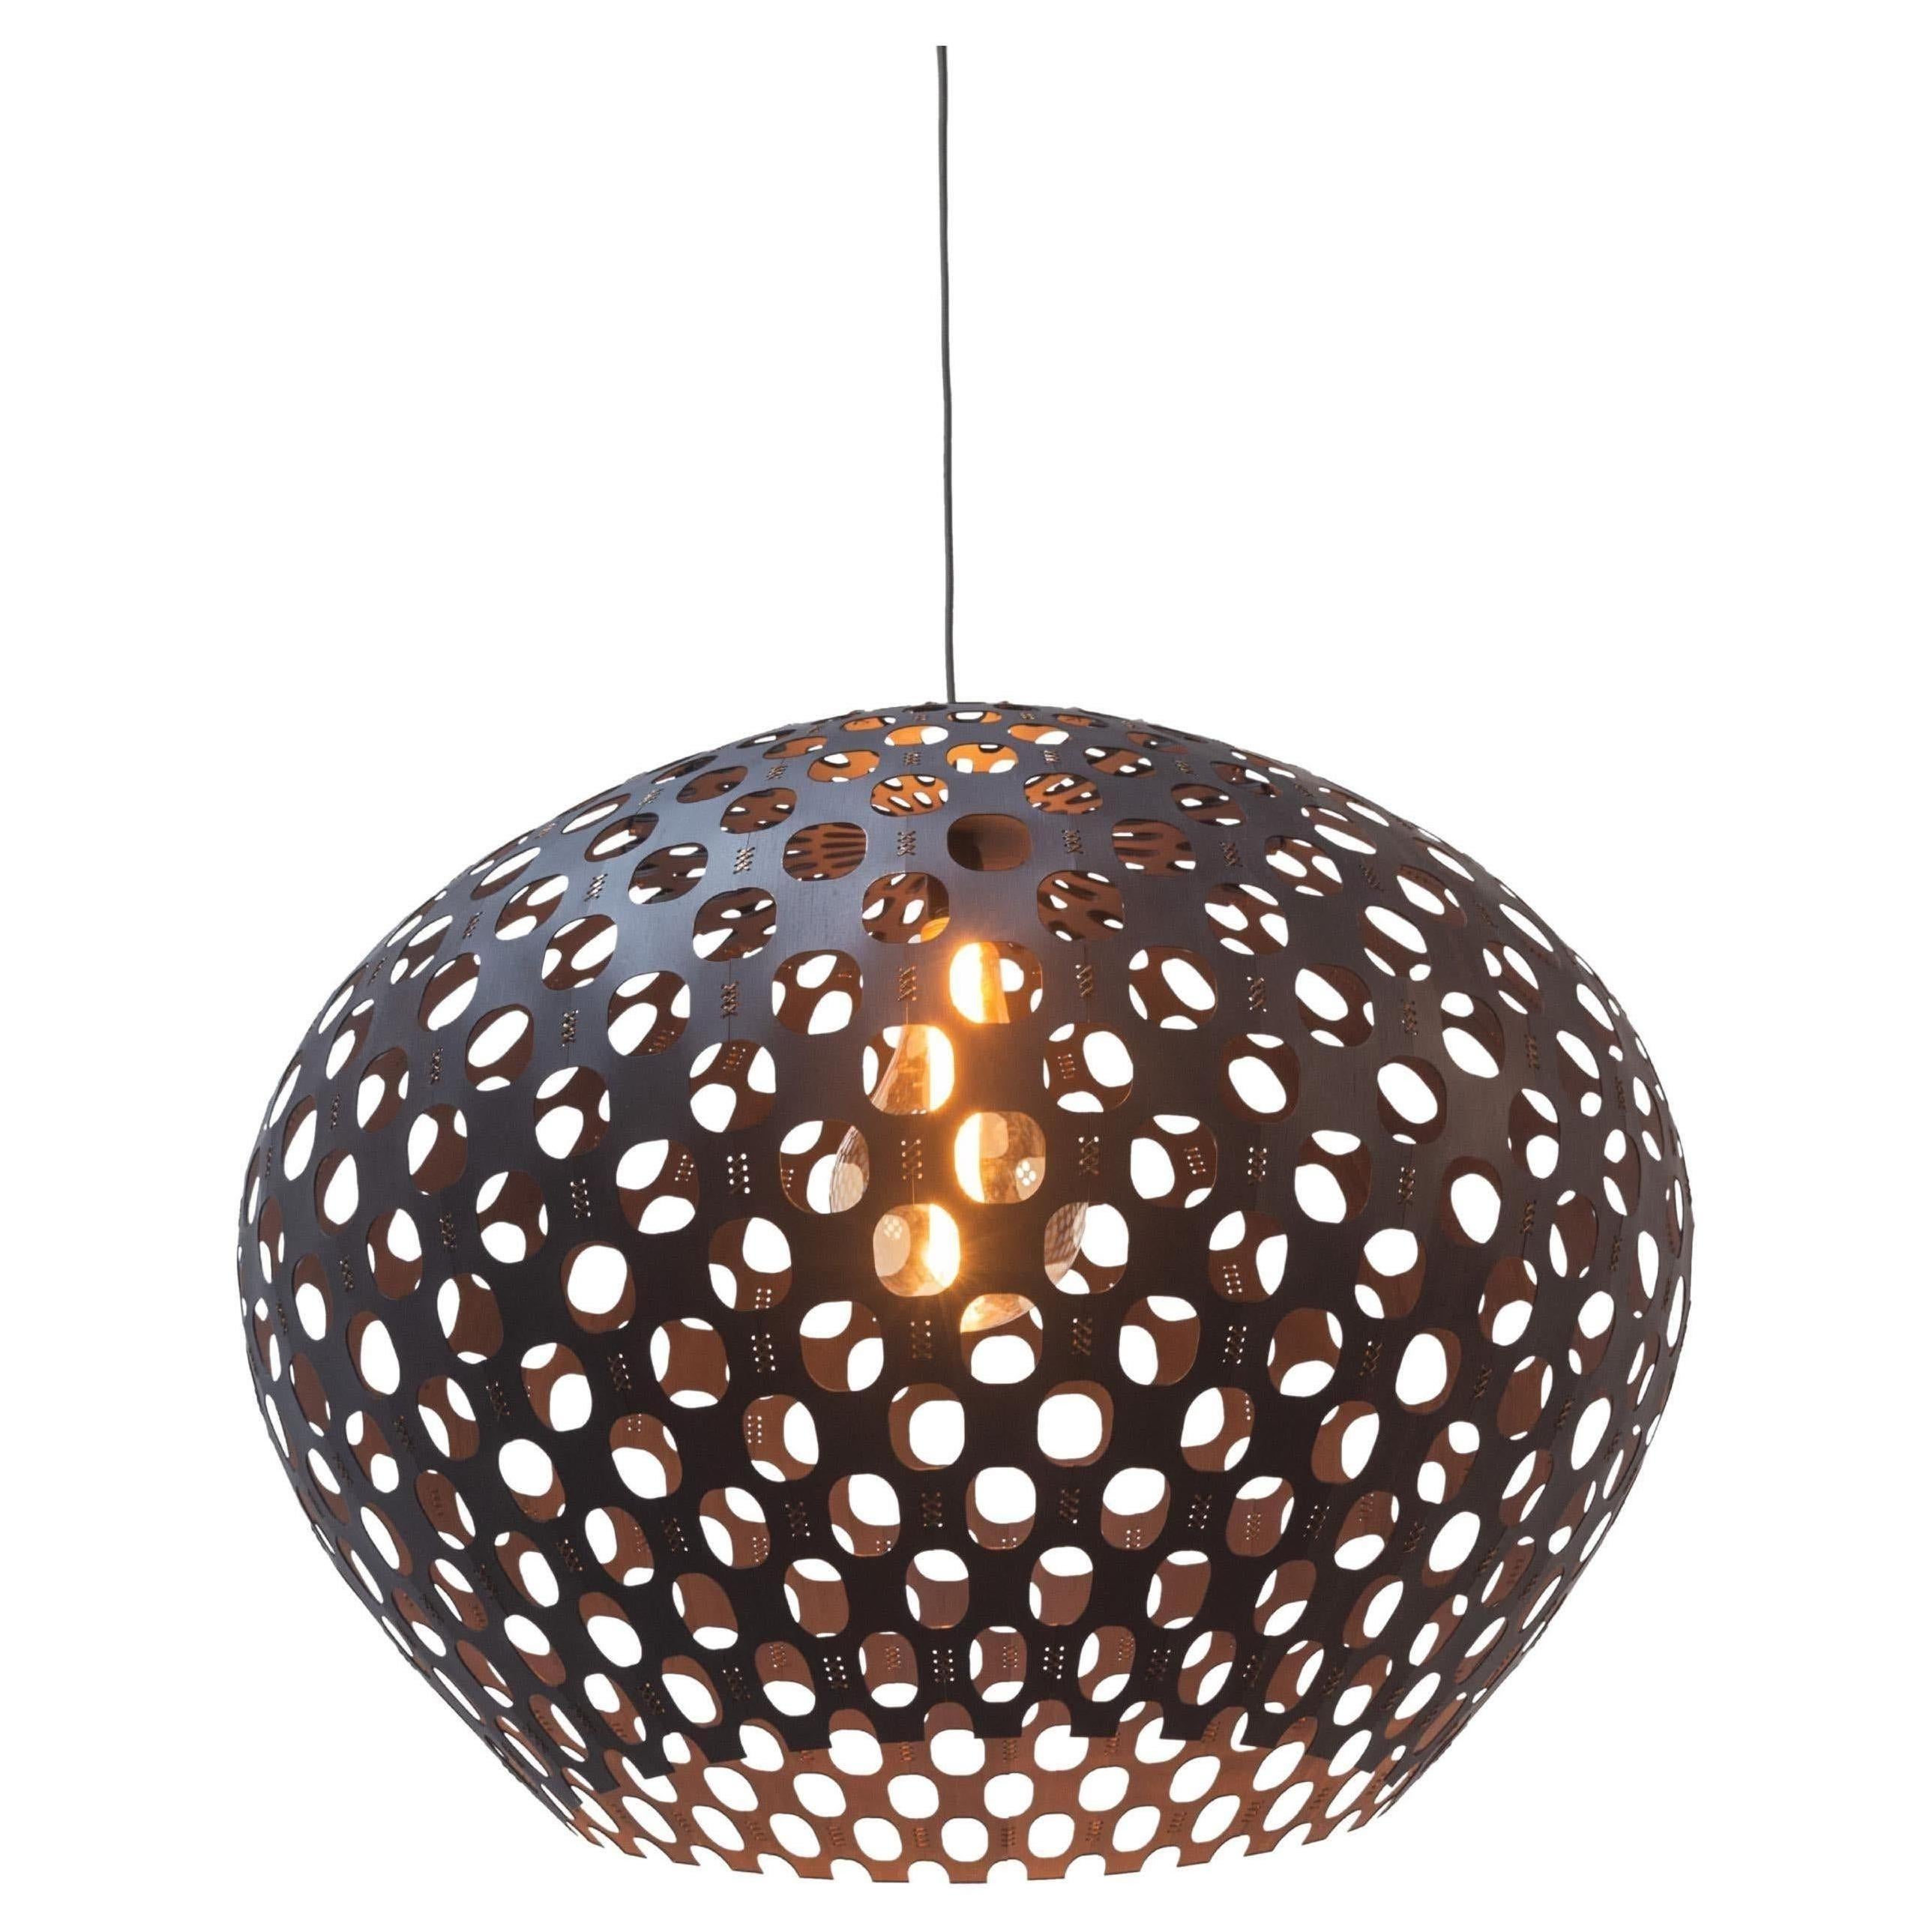 Panelitos Sphere Lamp Medium von Piegatto, eine Contemporary Sculptural Lamp